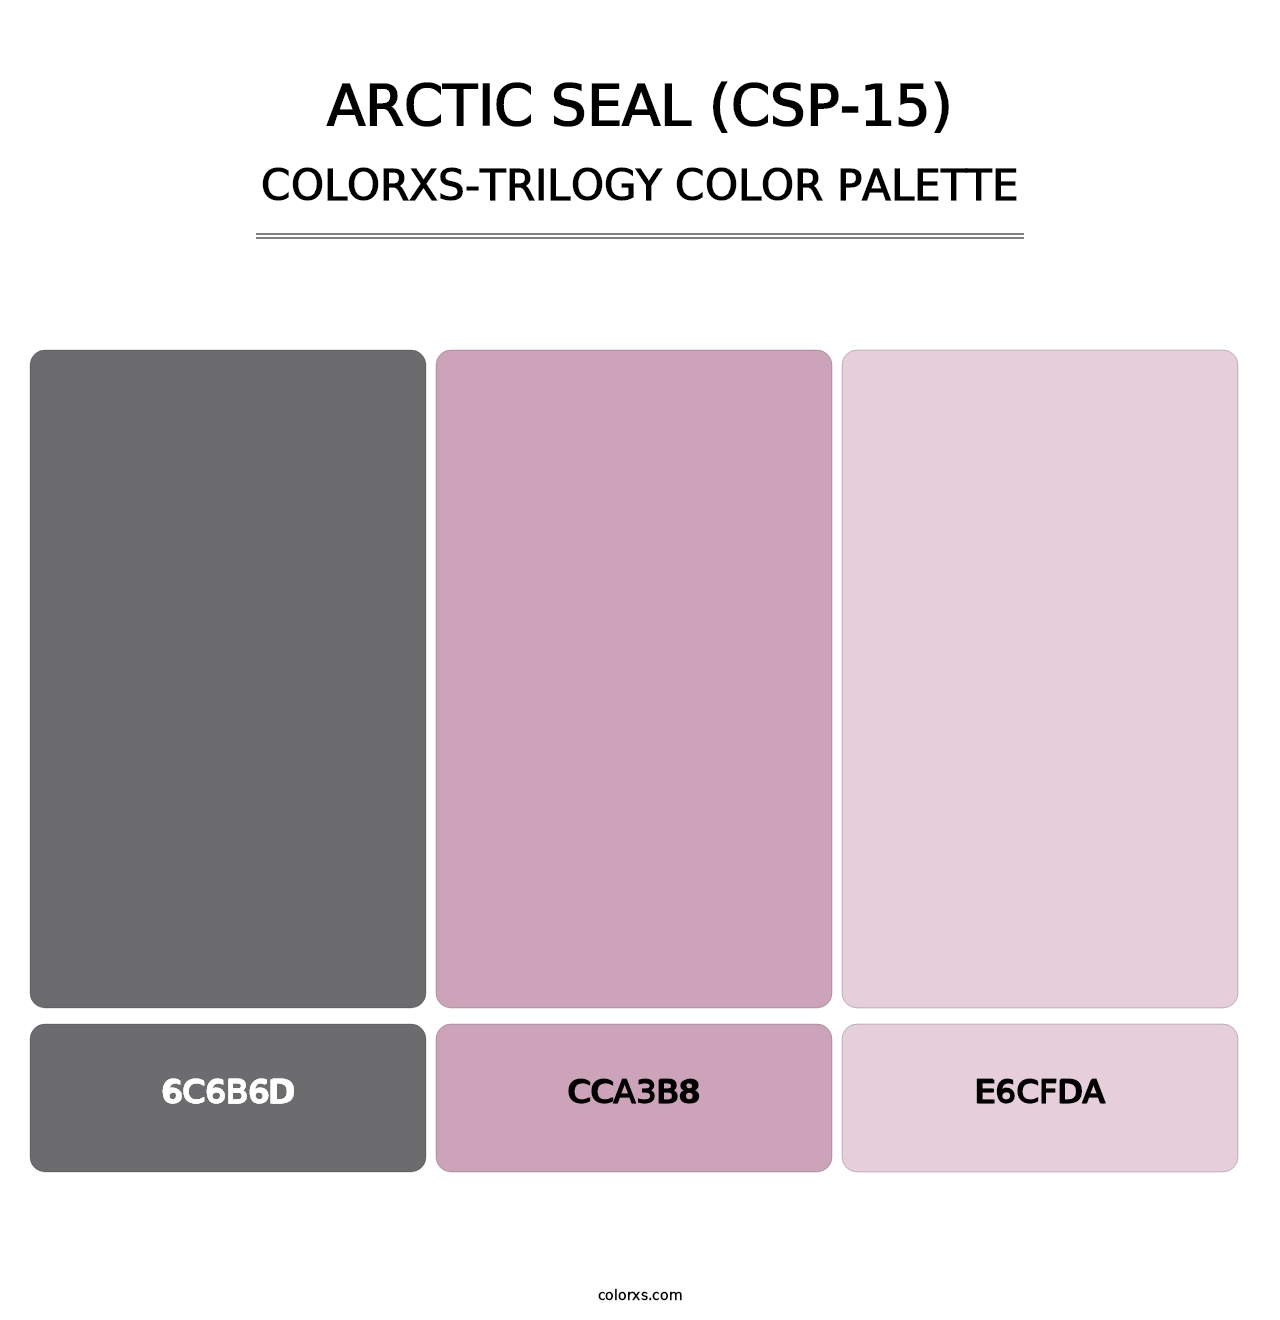 Arctic Seal (CSP-15) - Colorxs Trilogy Palette